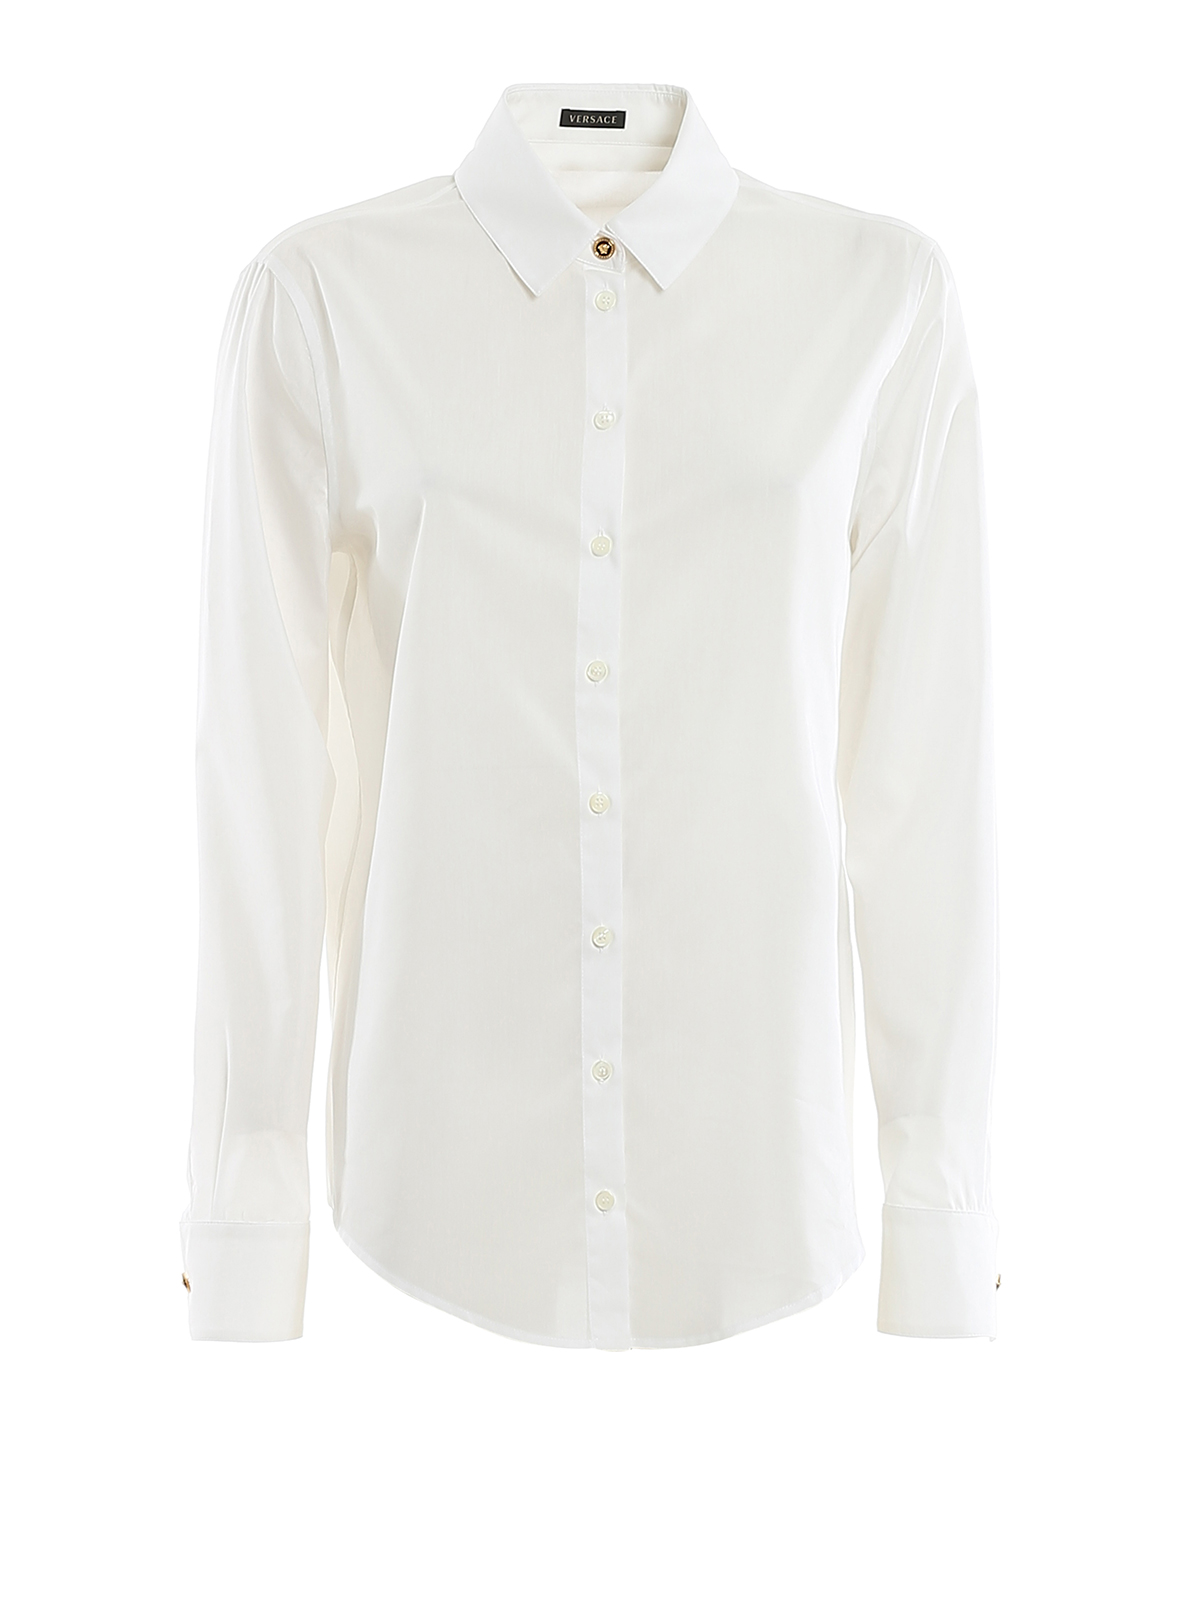 versace button shirt